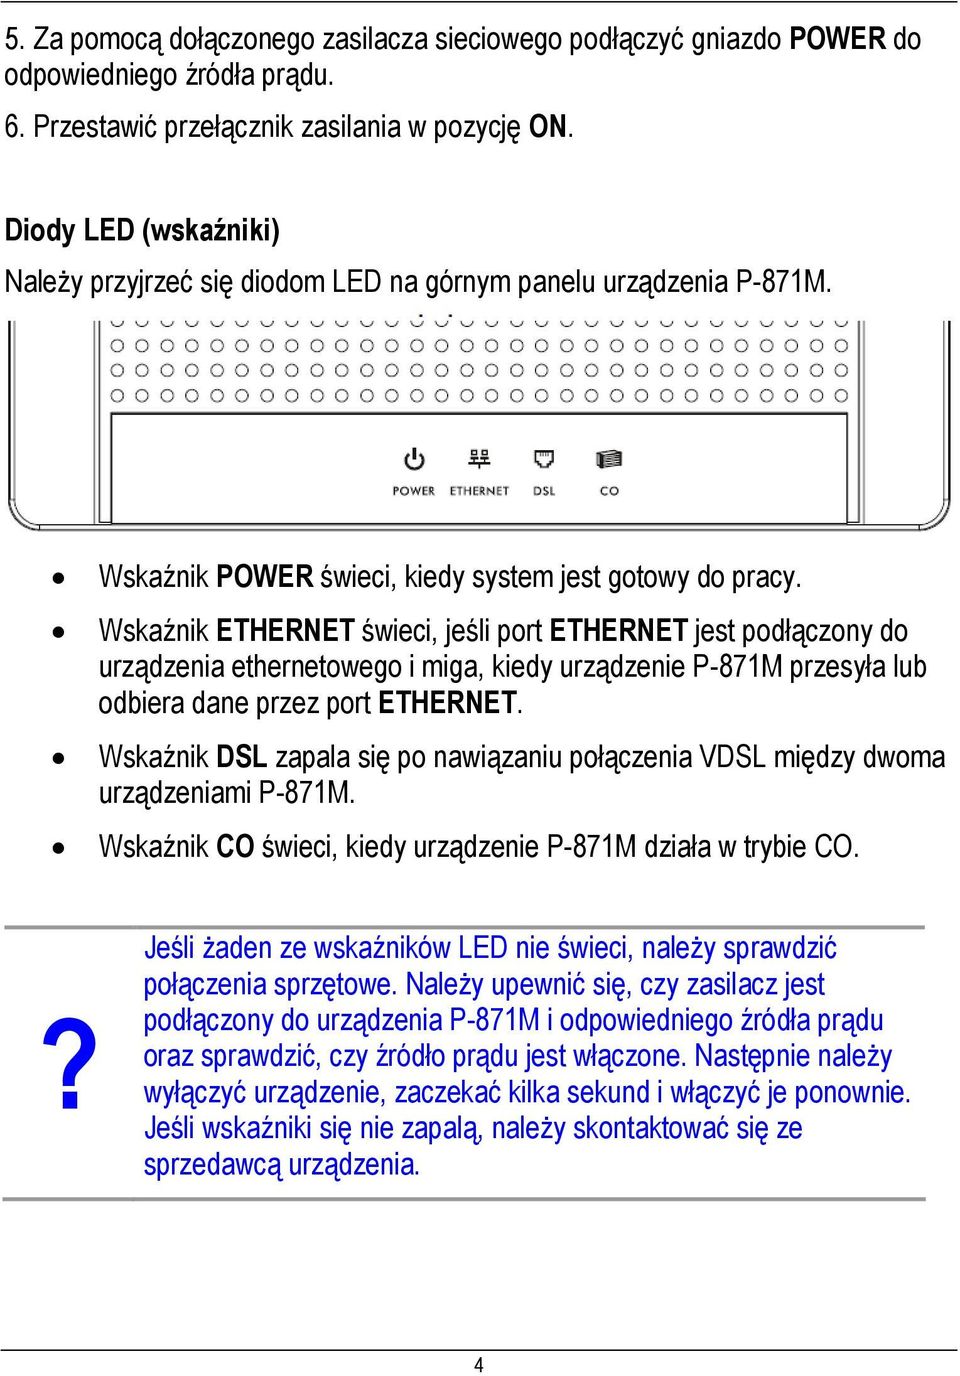 Wskaźnik ETHERNET świeci, jeśli port ETHERNET jest podłączony do urządzenia ethernetowego i miga, kiedy urządzenie P-871M przesyła lub odbiera dane przez port ETHERNET.